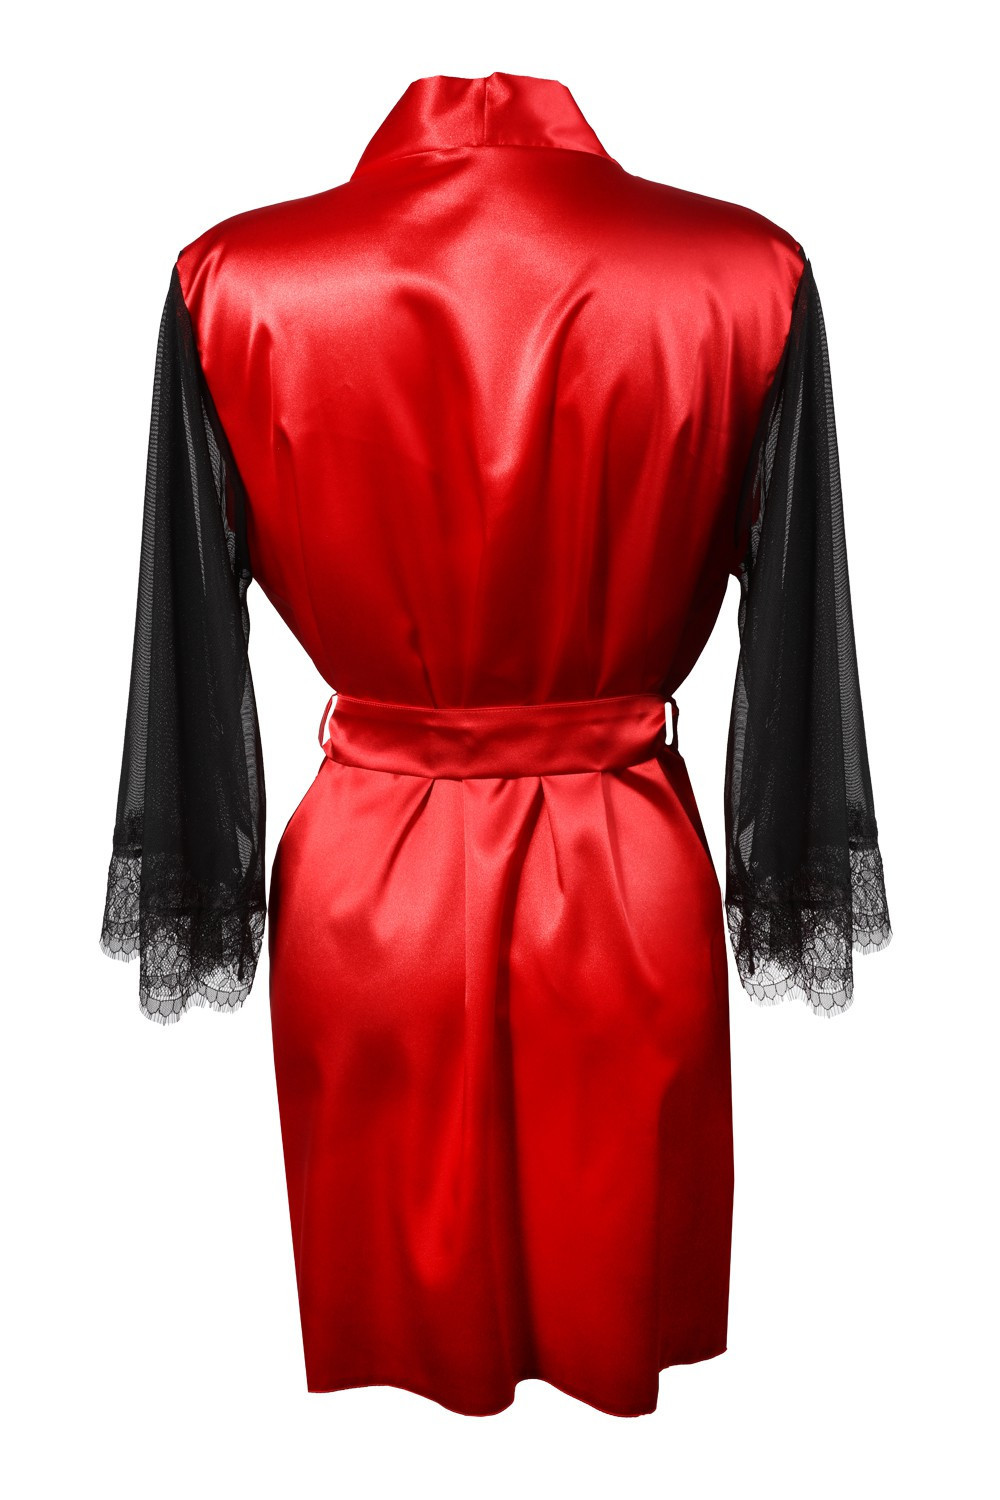 Housecoat model 18227296 Red XL Red - DKaren